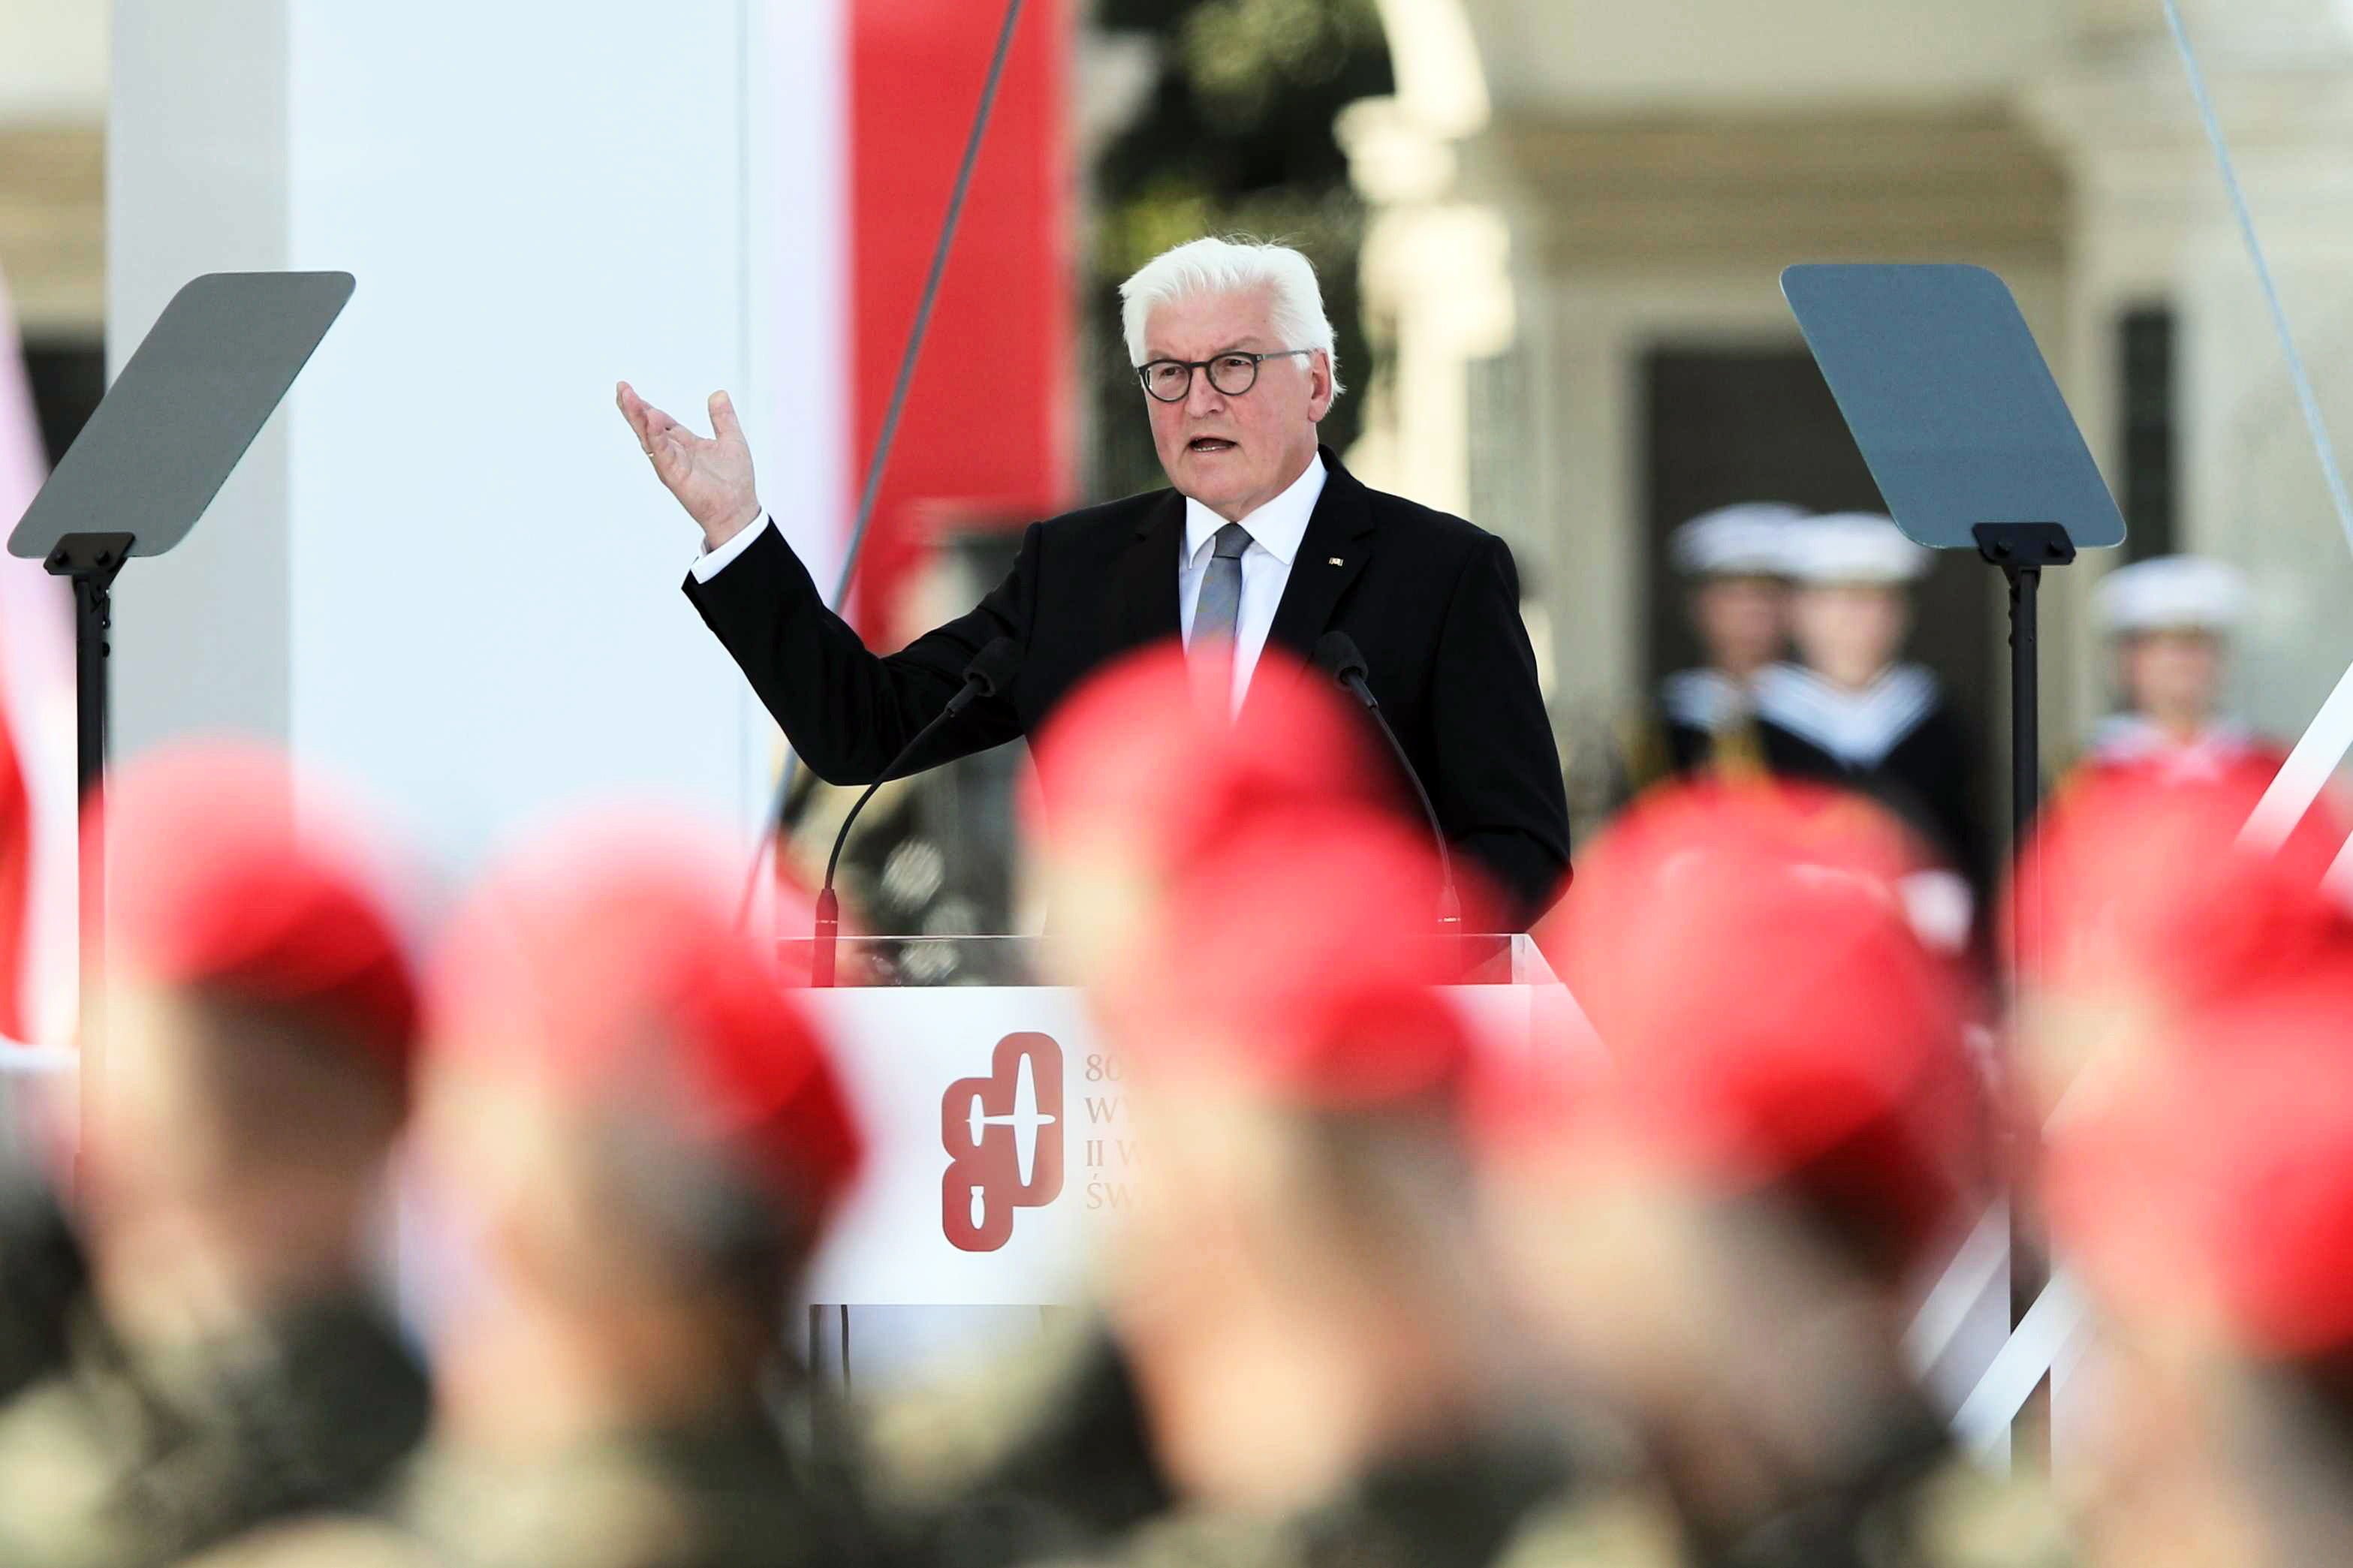 El president alemany en l'aniversari de la invasió de Polònia: "Acoto el cap i demano perdó"